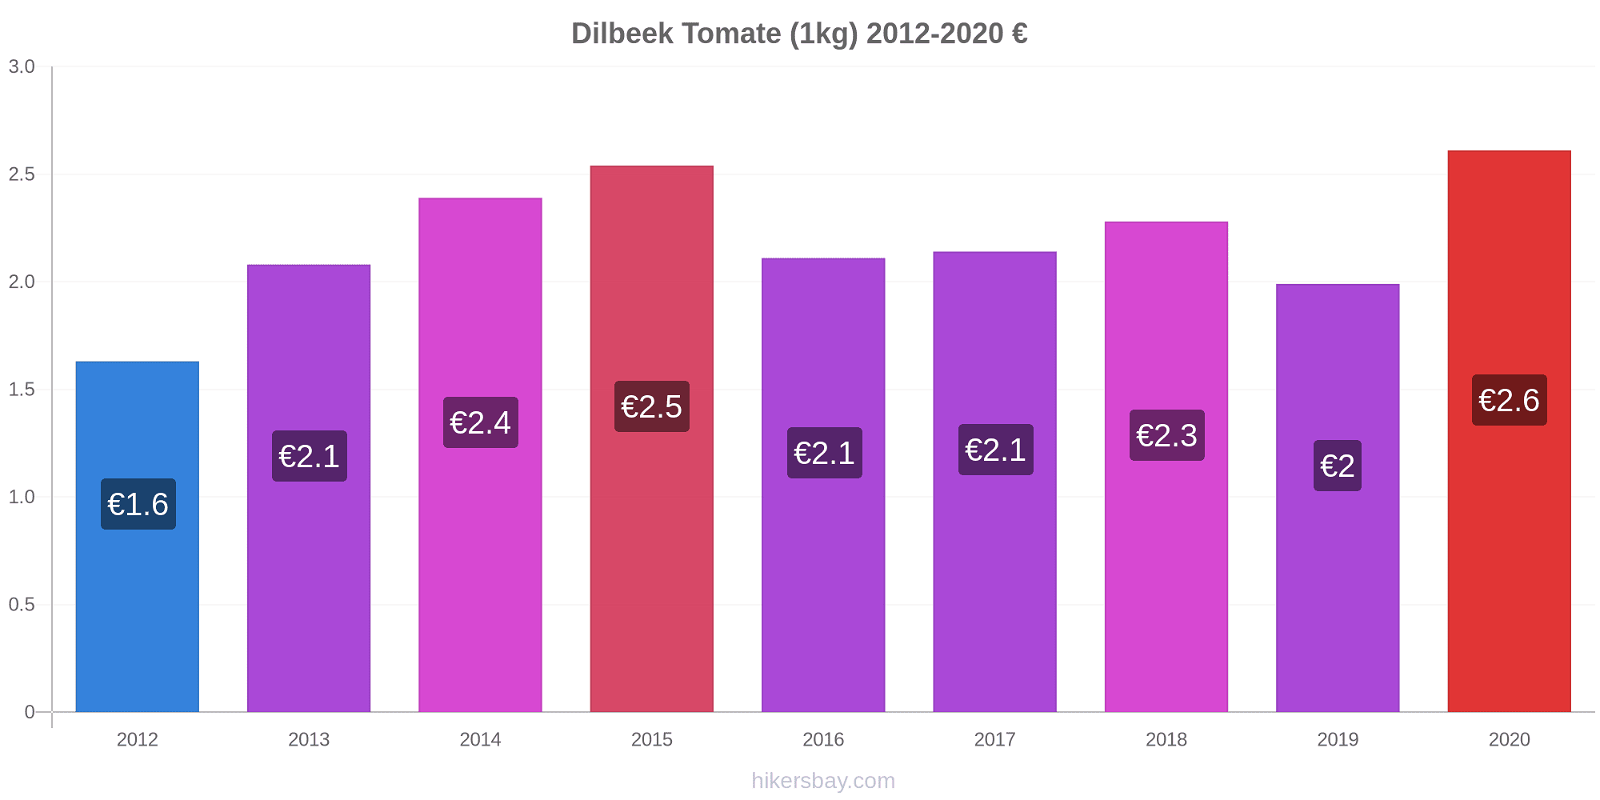 Dilbeek cambios de precios Tomate (1kg) hikersbay.com